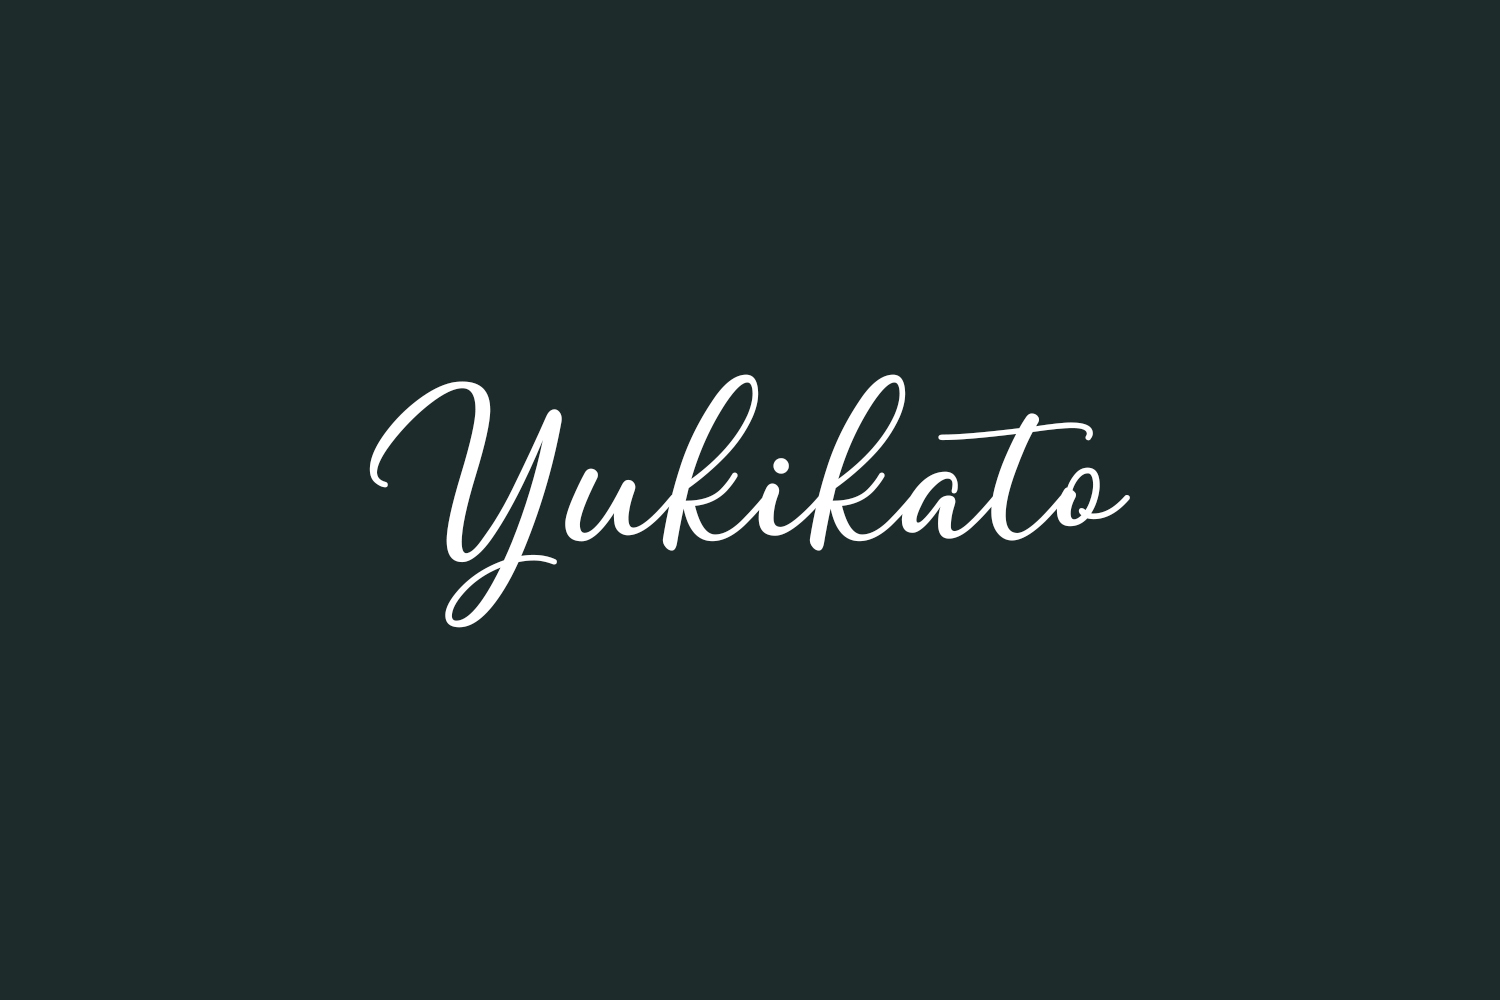 Yukikato Free Font